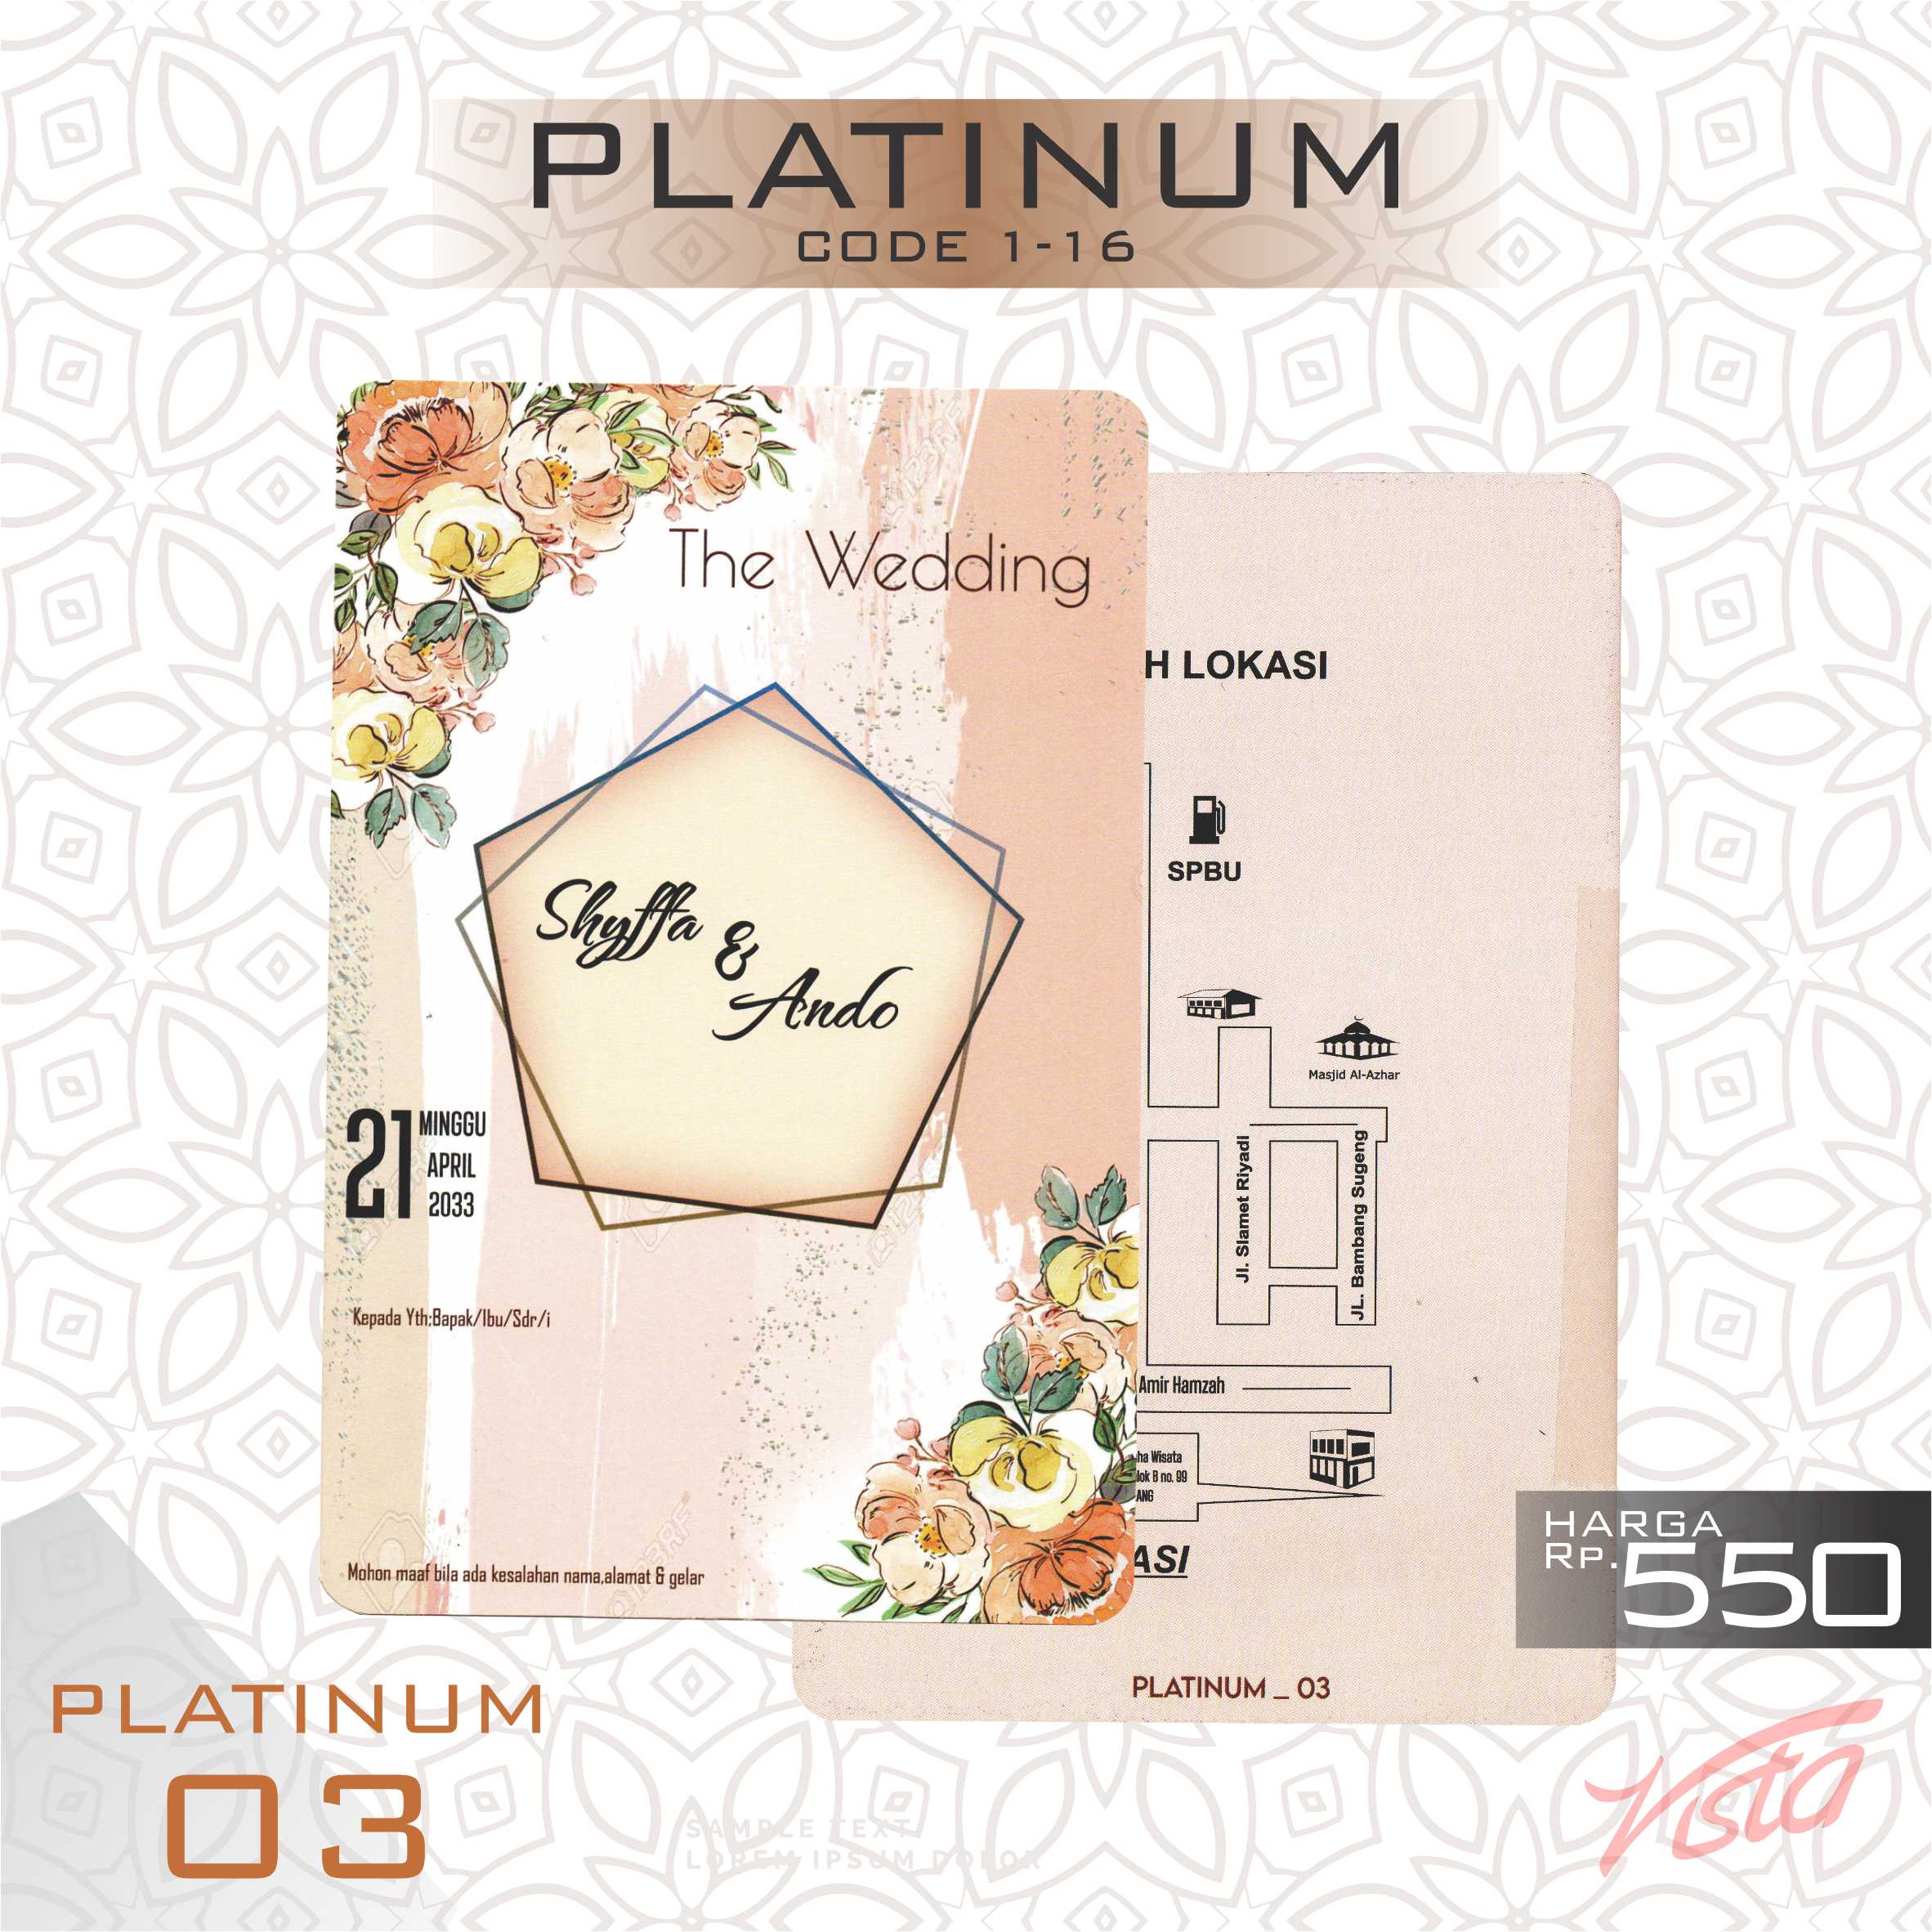 Platinum 03 